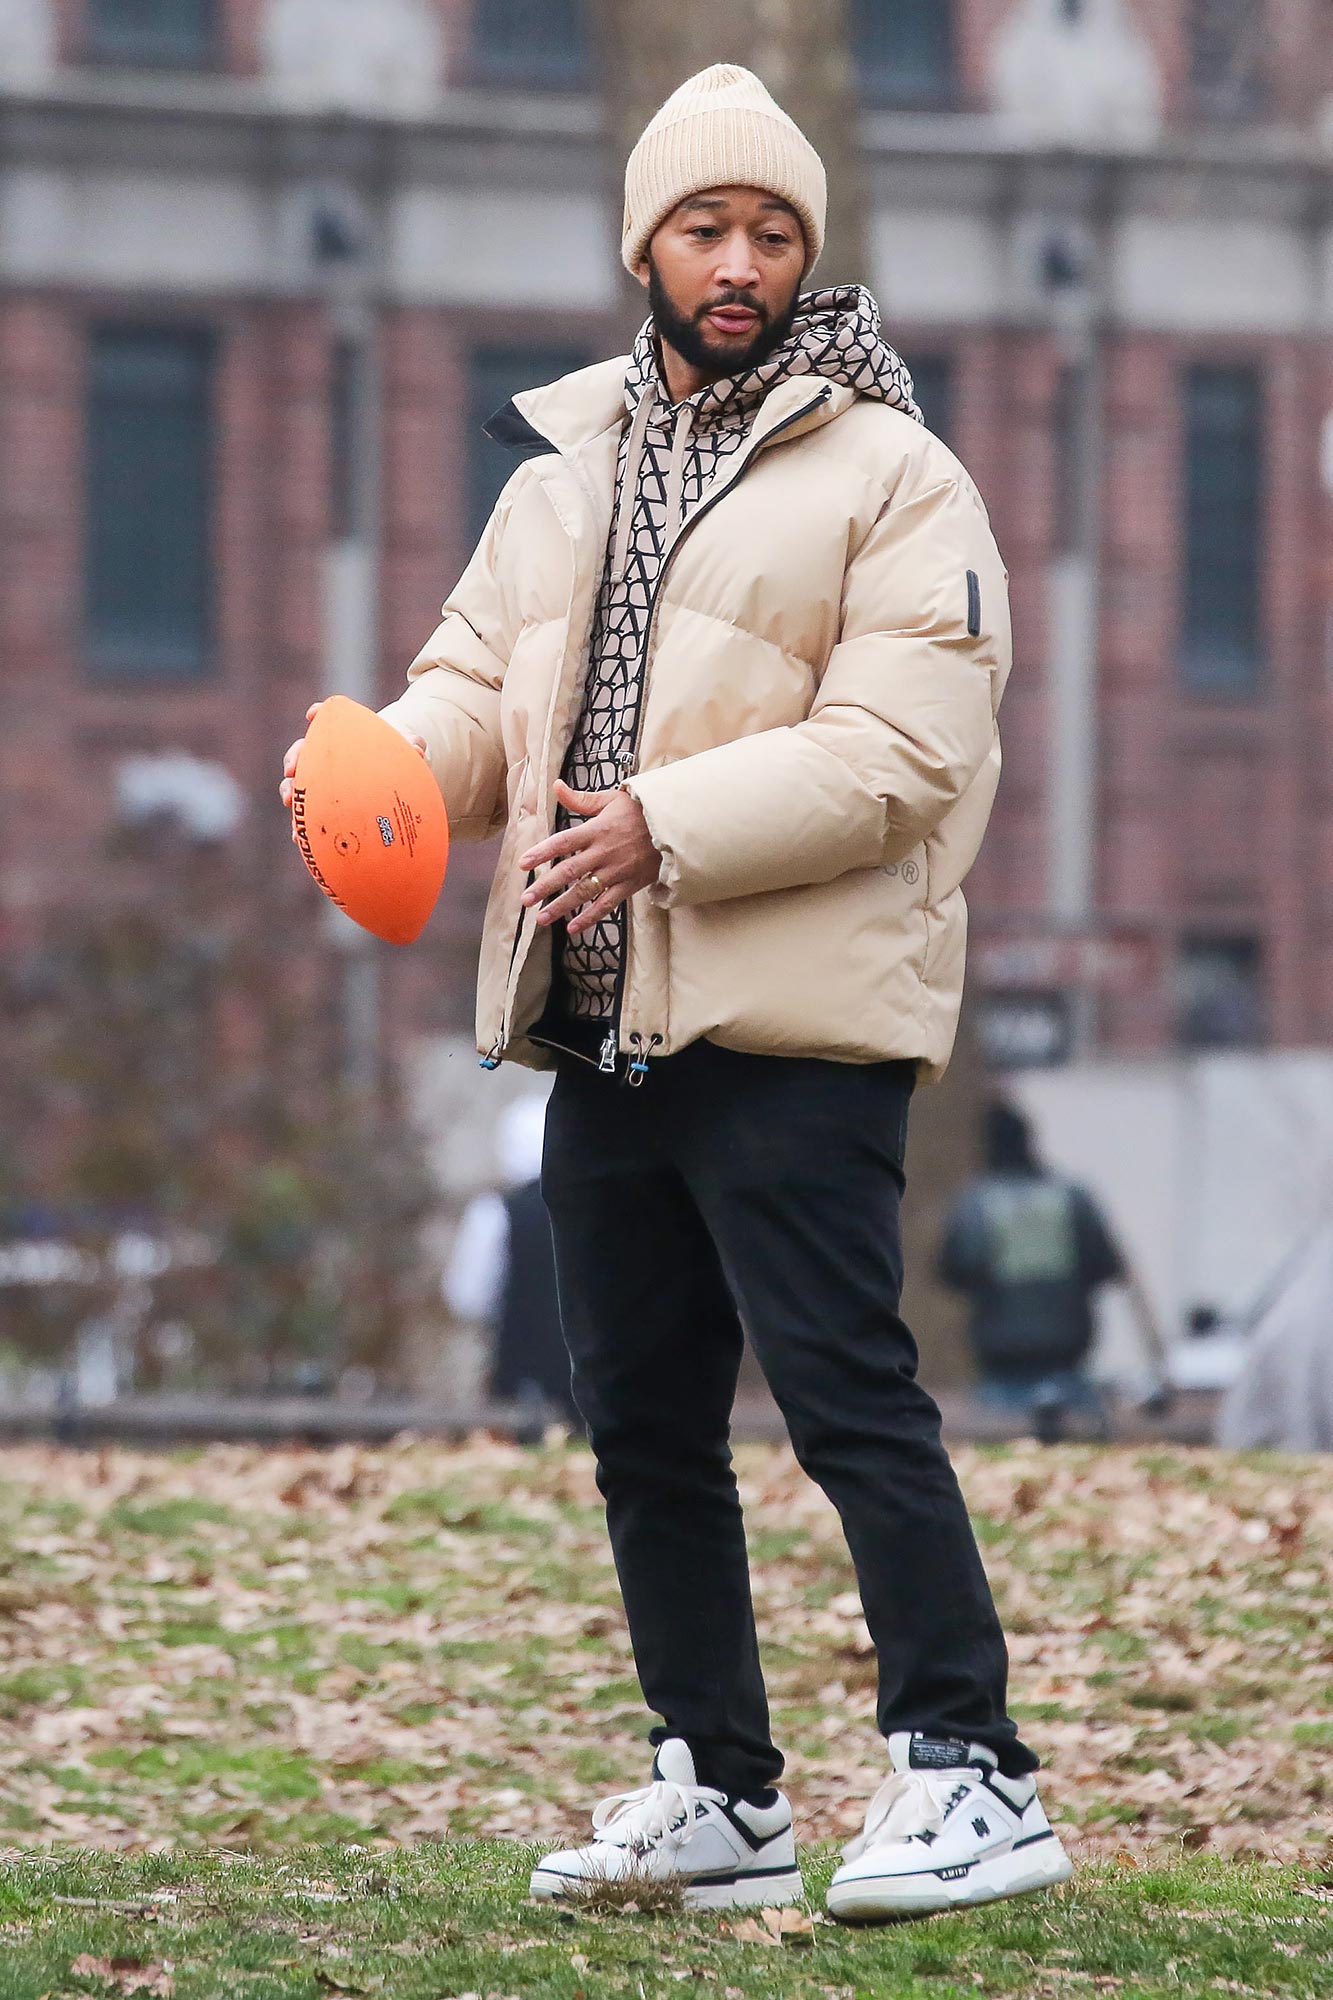 1. John Legend tossing a football outdoors